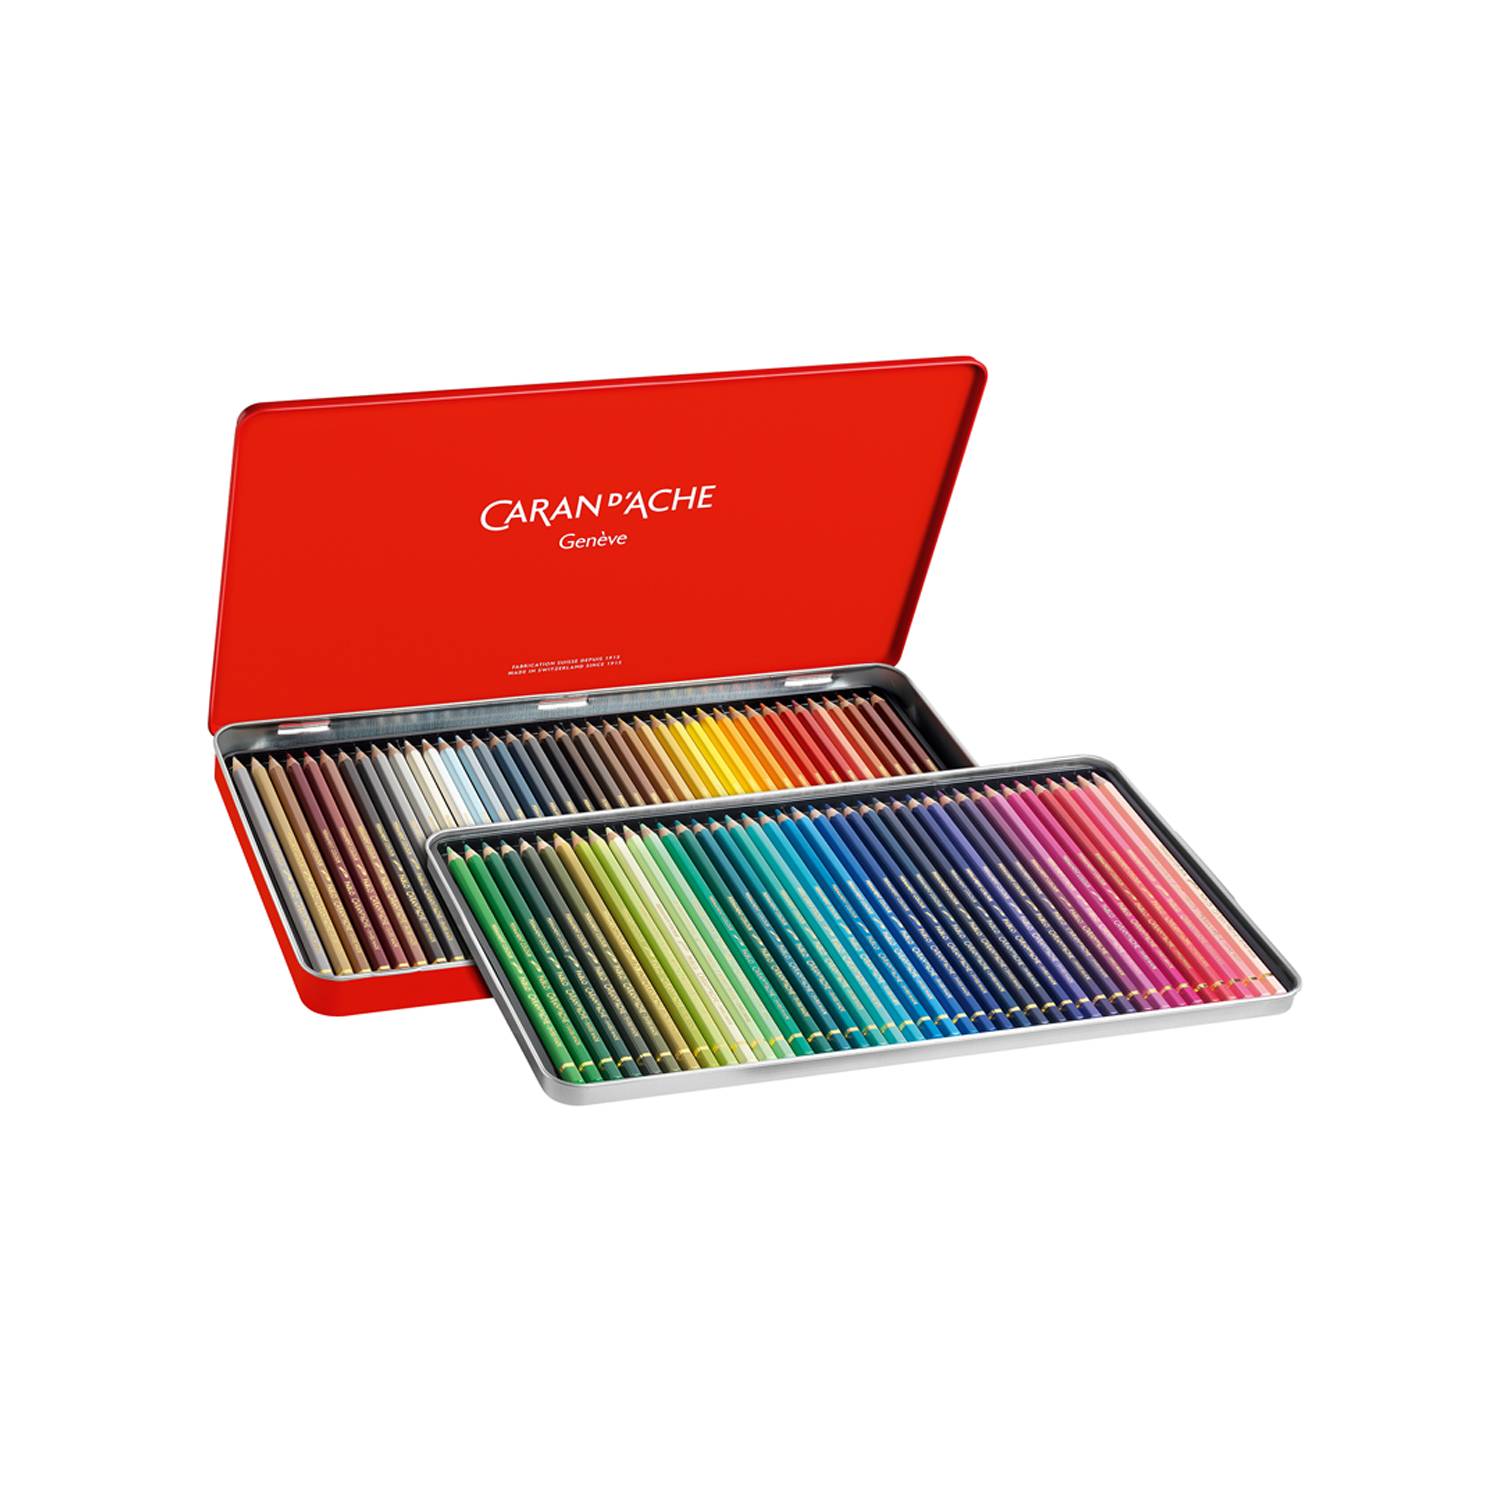 Caran d'Ache Pablo Set 12 Lápices de Colores - DibuChile – Dibu Chile